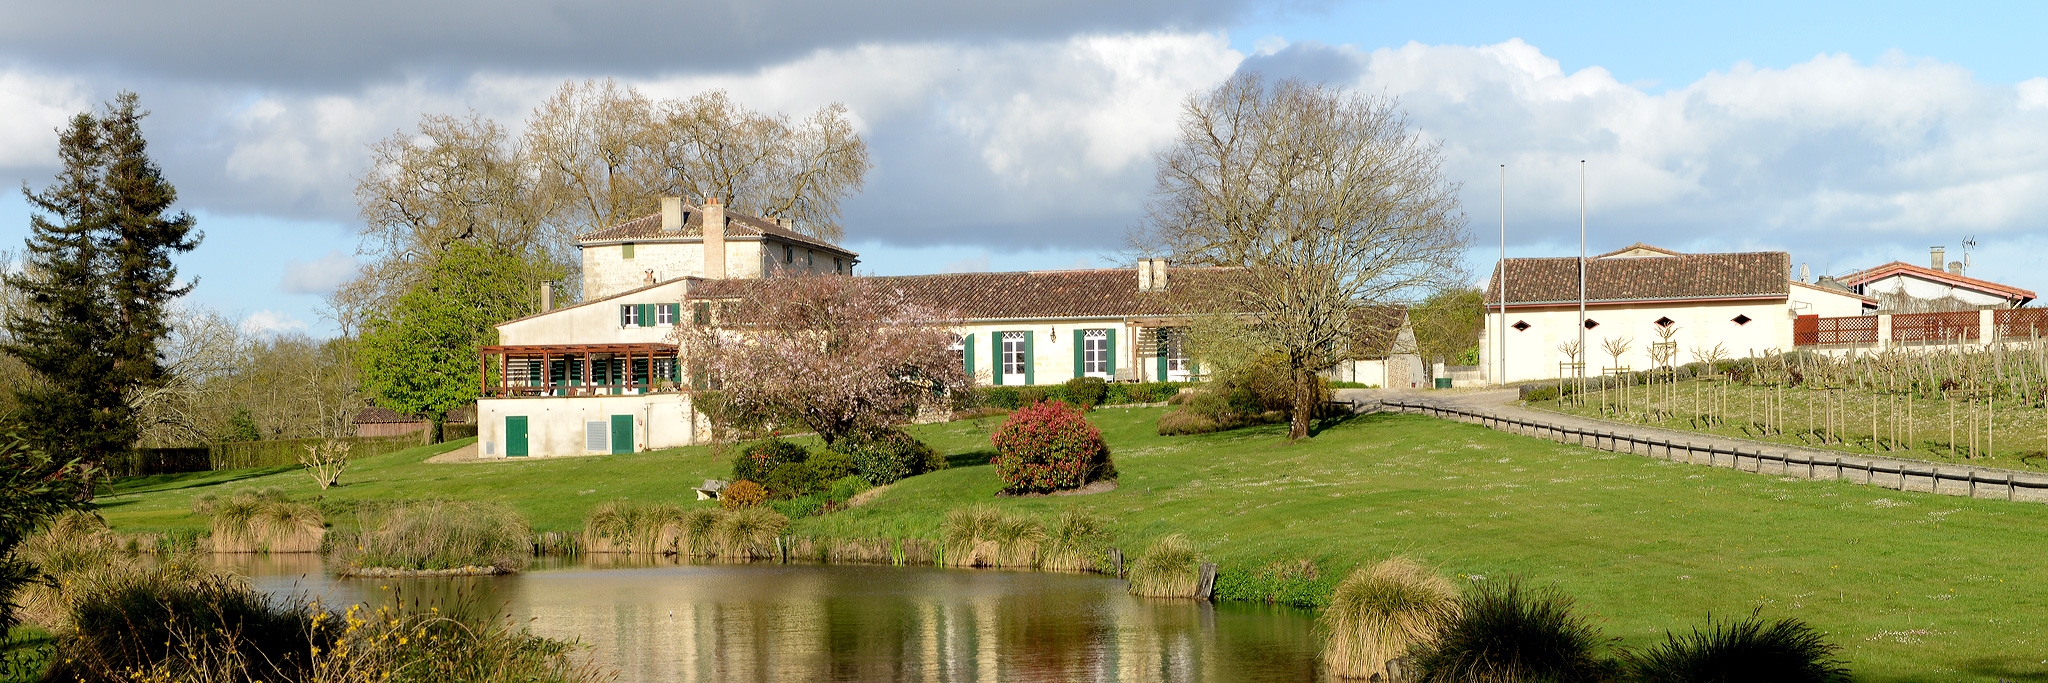 Château Angludet